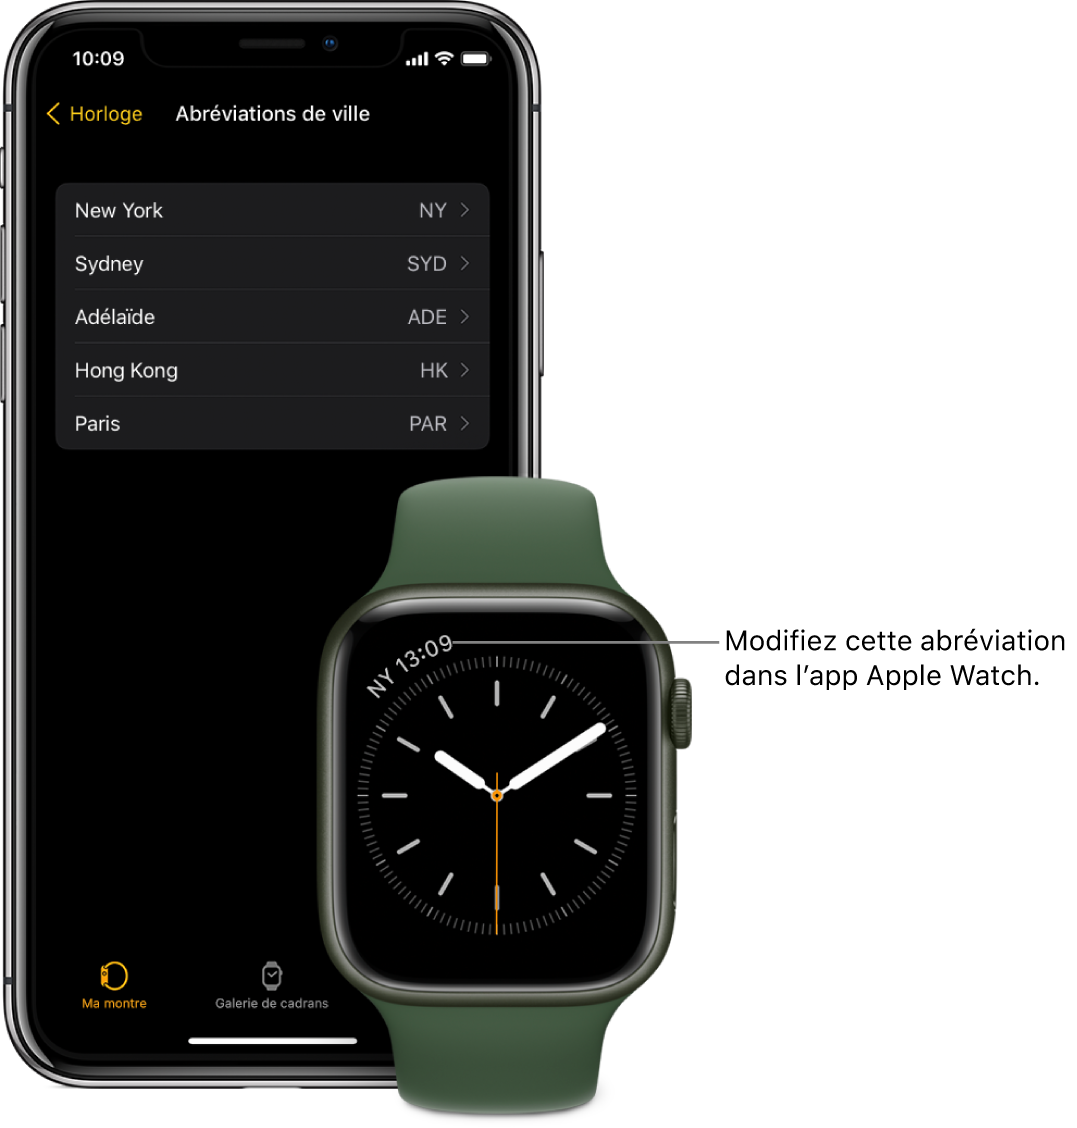 Un iPhone et une Apple Watch côte à côte. L’écran de l’Apple Watch affiche l’heure de New York, dont l’abréviation est NYC. L’écran de l’iPhone affiche la liste des villes au format abrégé dans les réglages Horloges de l’app Watch.